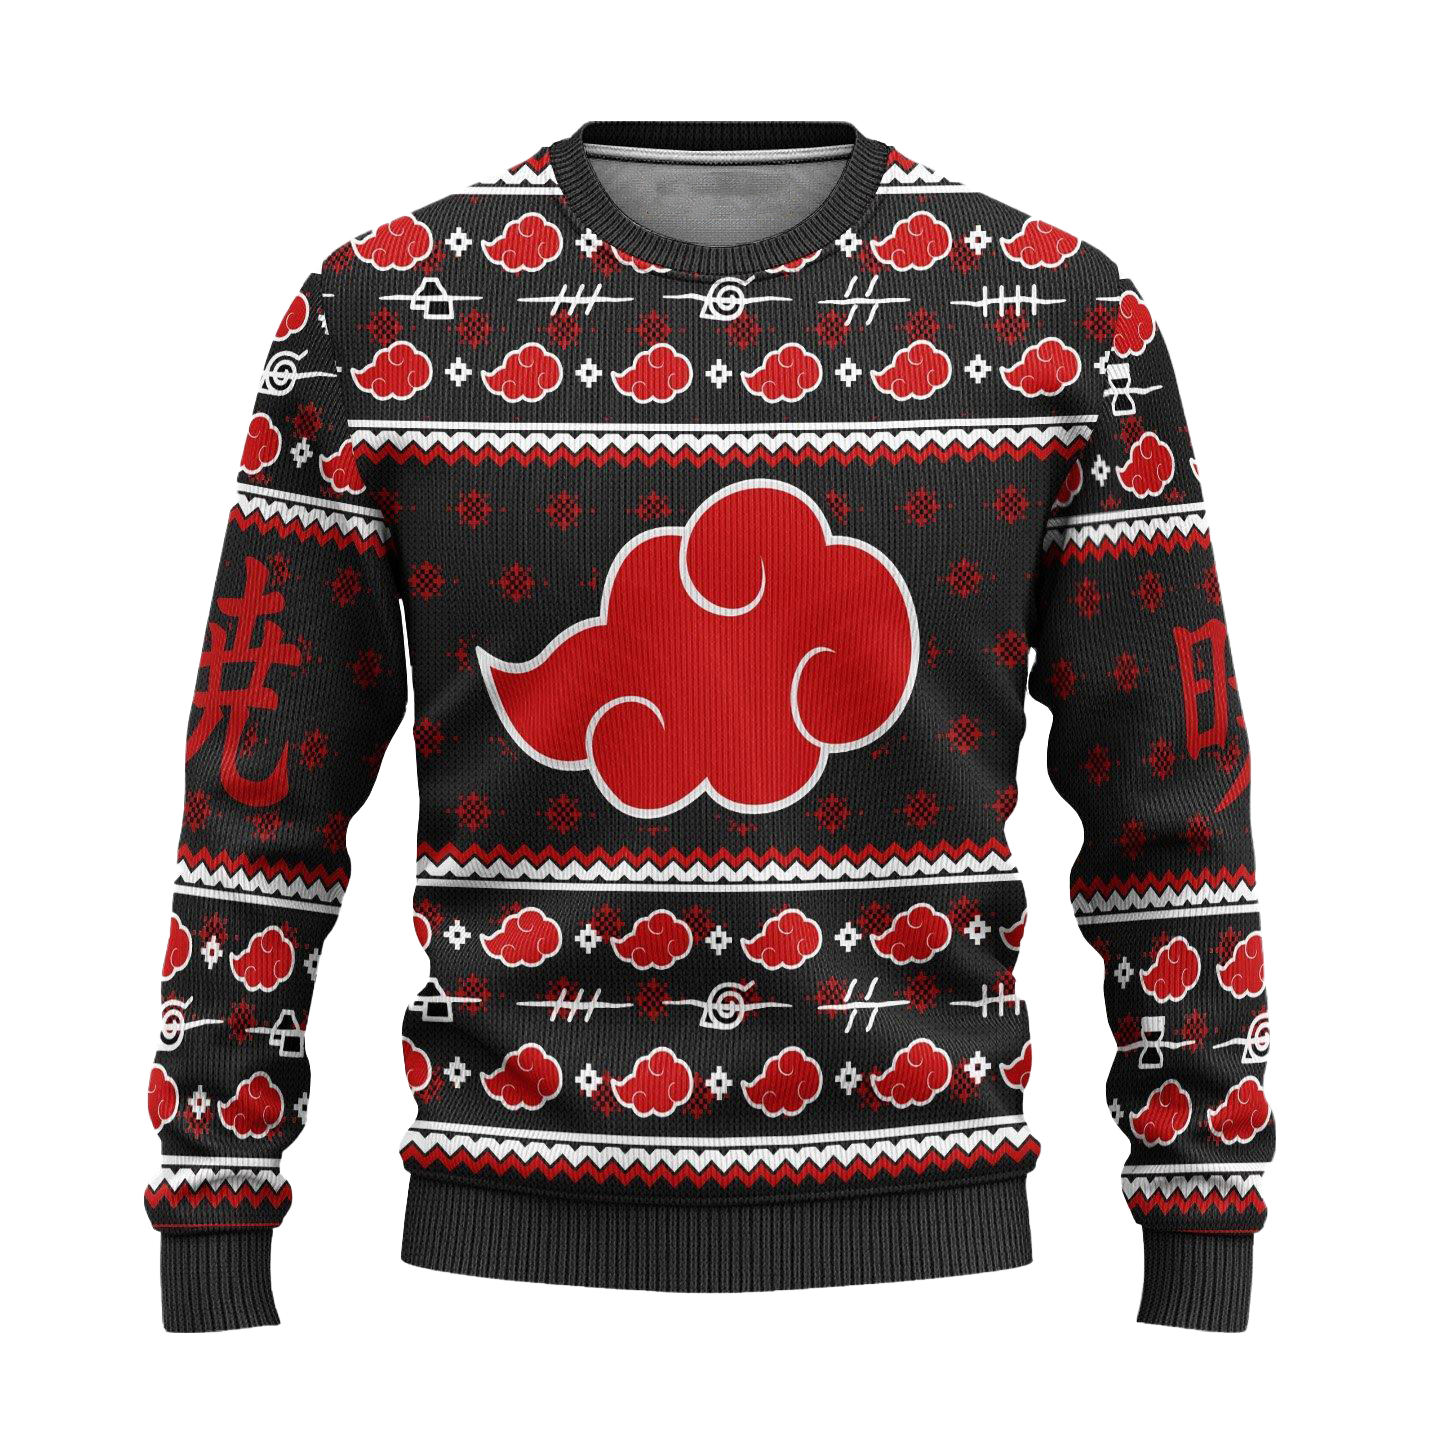 Akatsuki Ugly Christmas Sweater Naruto Anime Xmas Gift